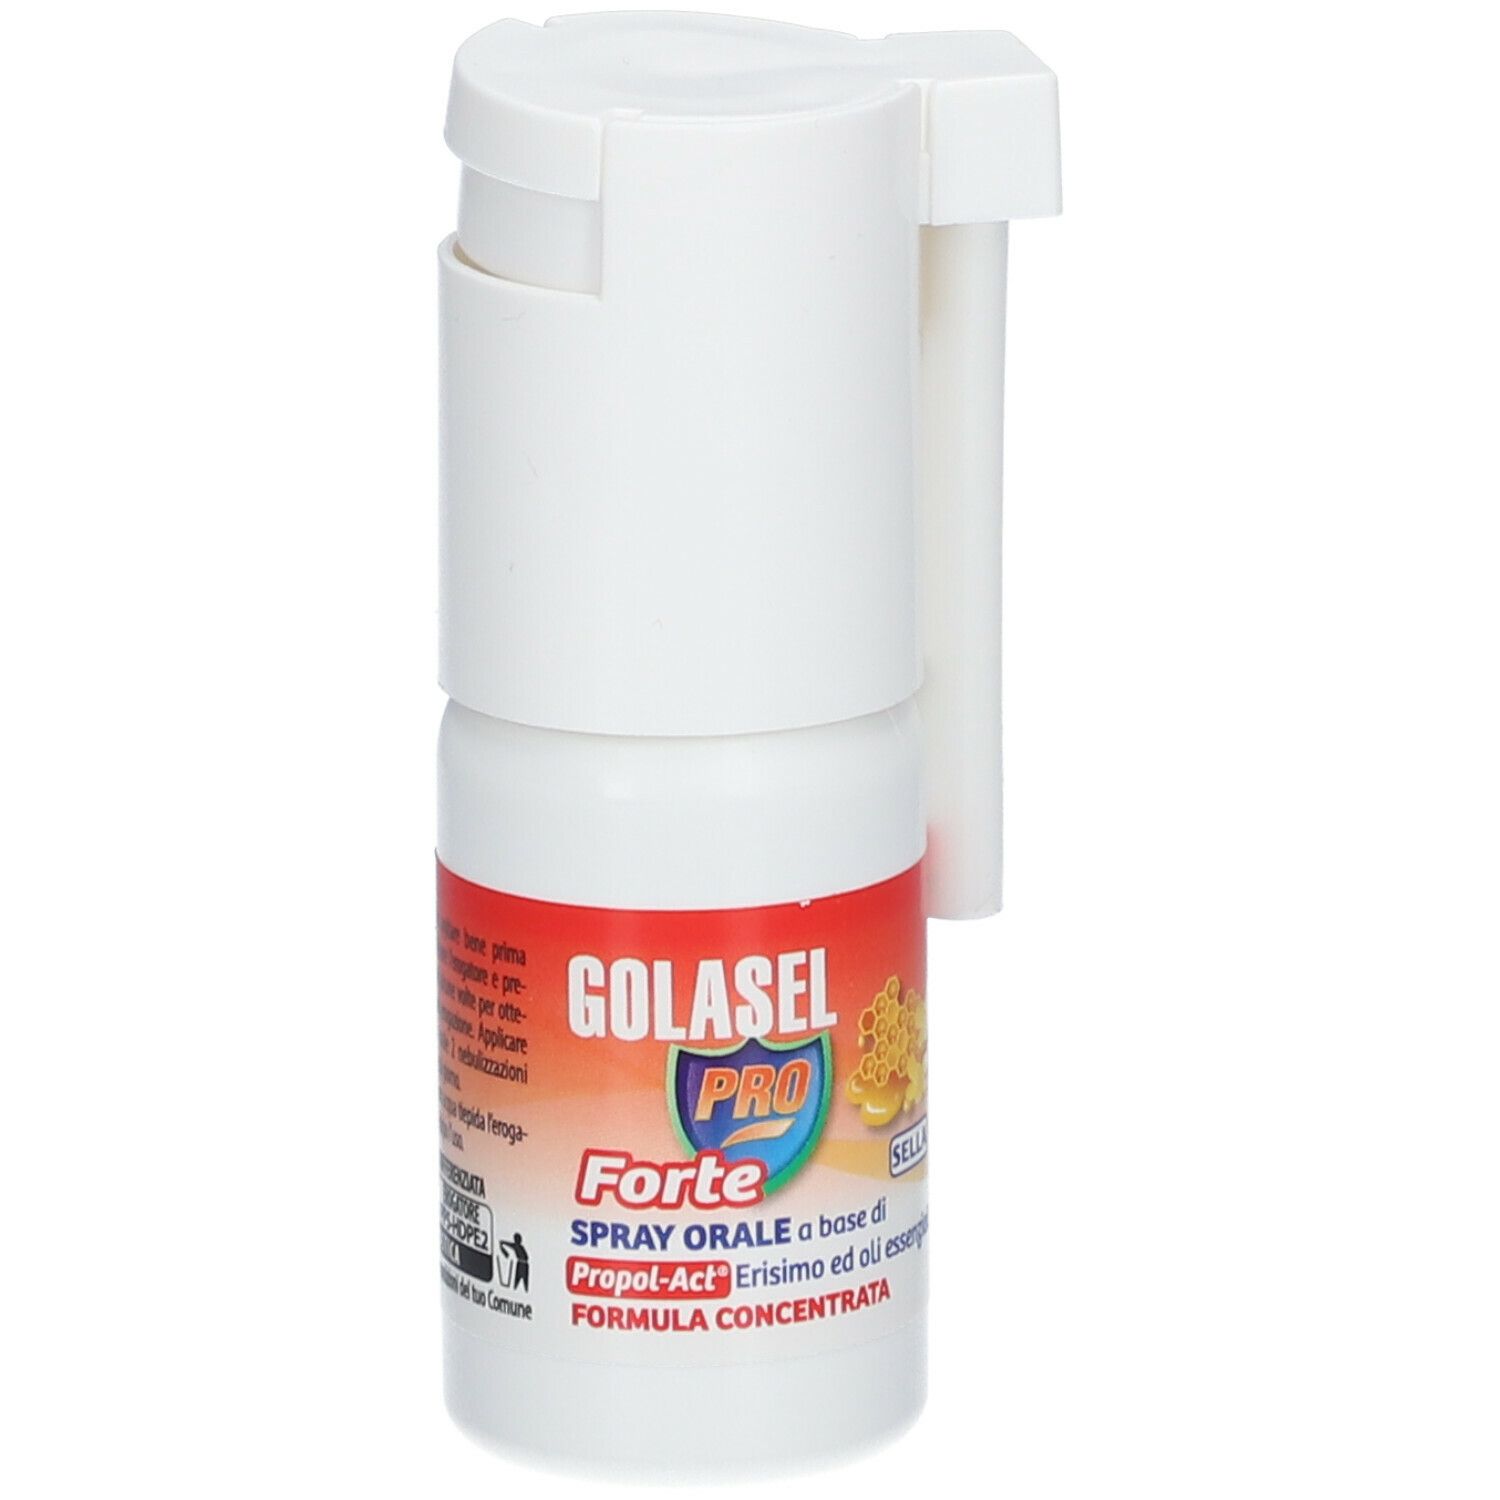 SELLA GOLASEL Forte Spray Orale